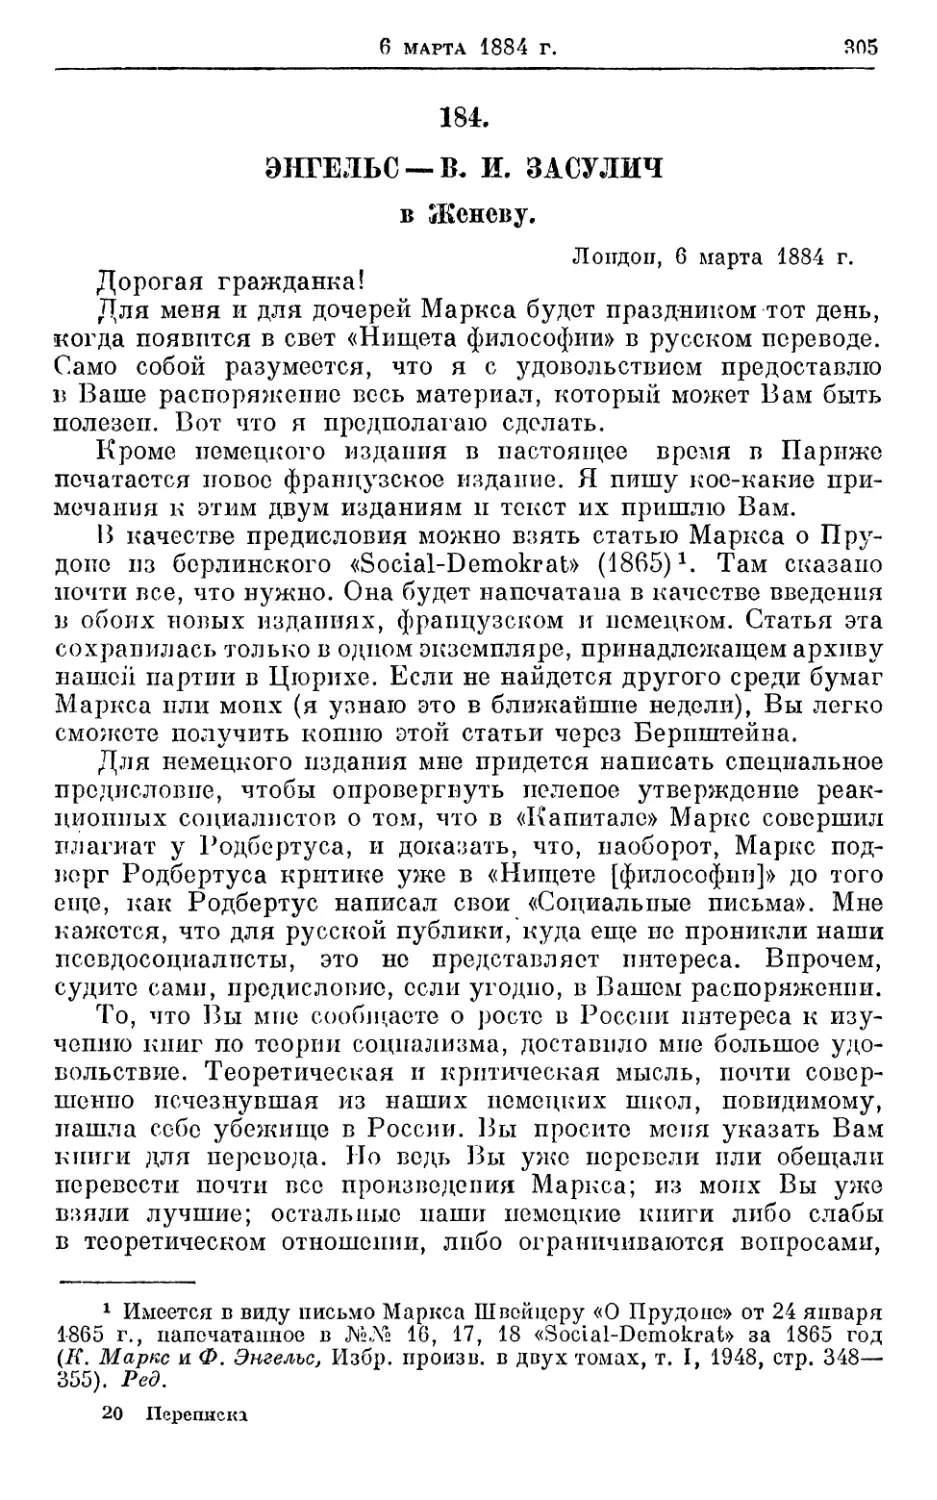 184. Энгельс — В. И. Засулич, 6 марта 1884г